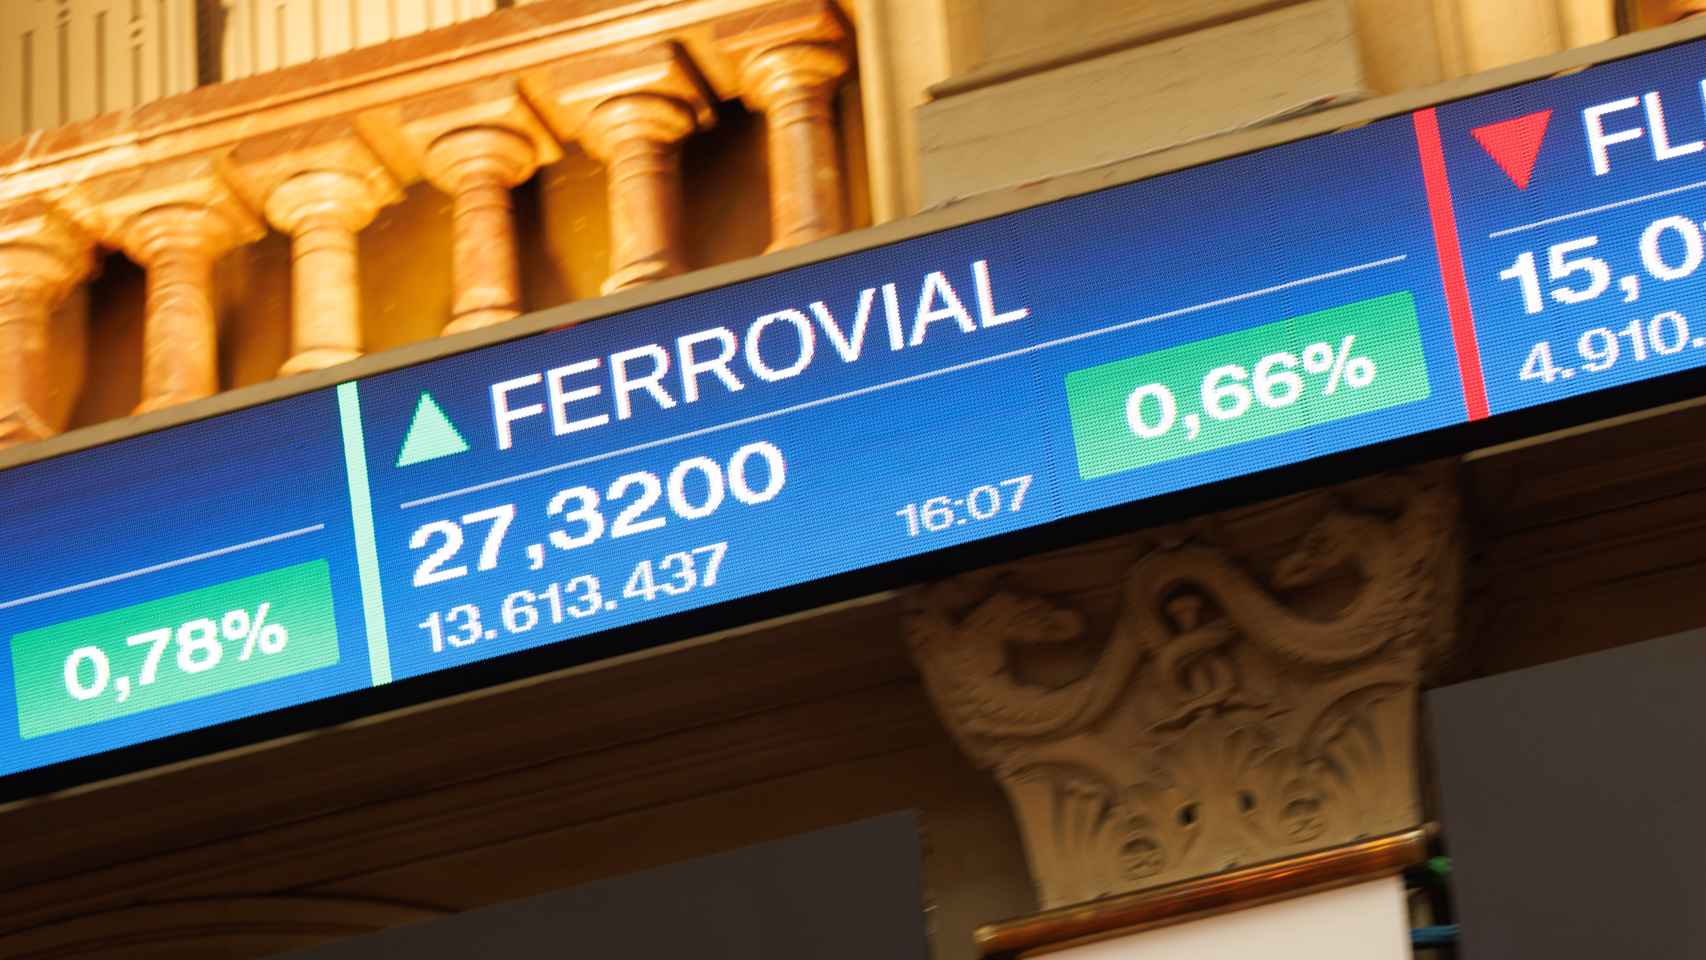 Ferrovial avanzaba con firmeza en bolsa cuando anunció el traslado de la sede a Países Bajos / EP